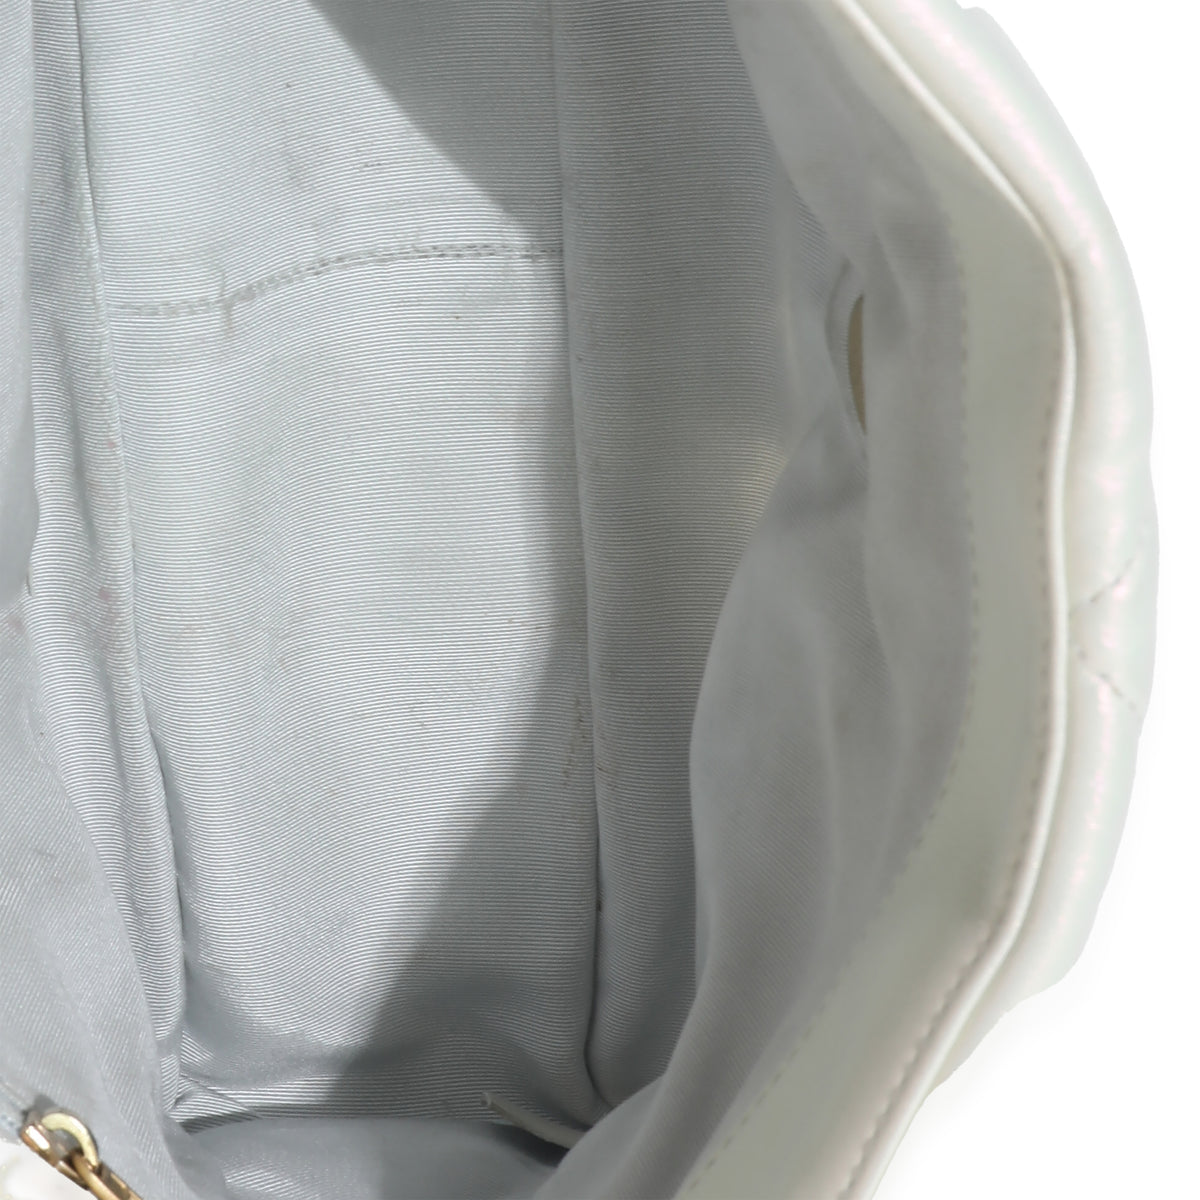 Chanel White Iridescent Calfskin Medium Chanel 19 Flap Bag, myGemma, DE